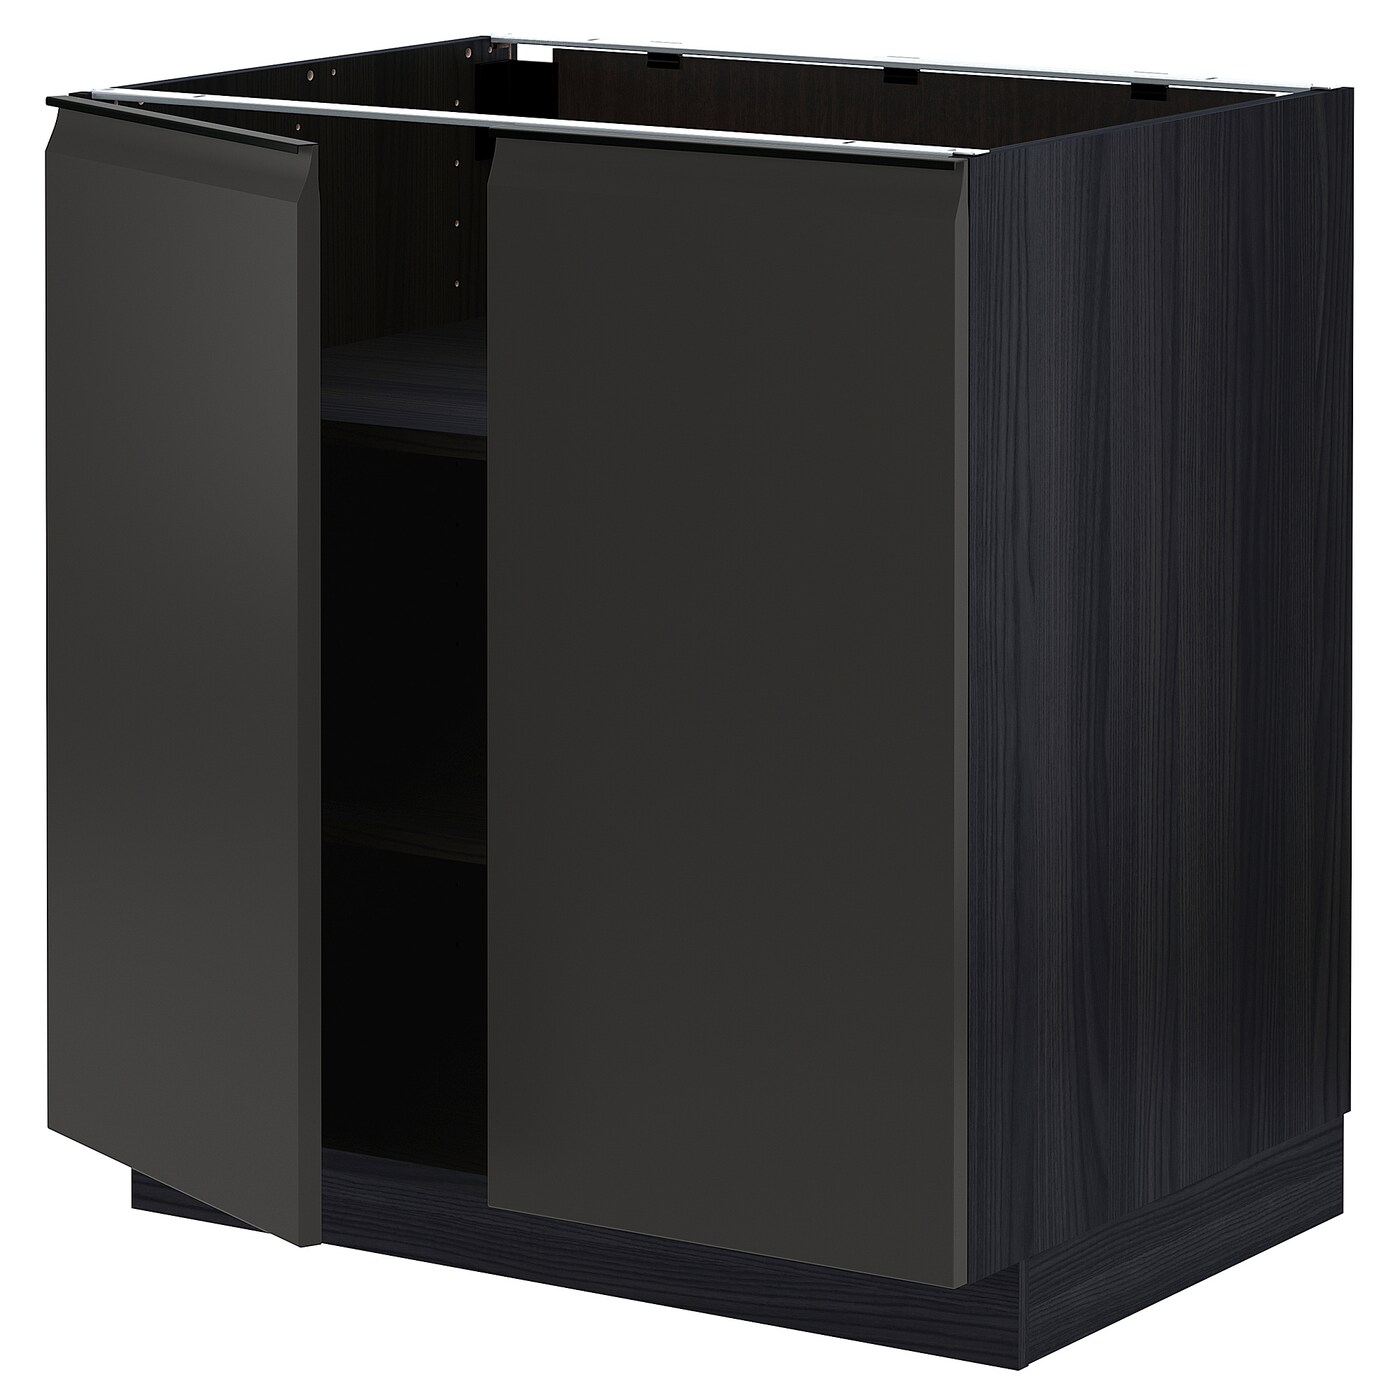 Напольный шкаф - METOD IKEA/ МЕТОД ИКЕА,  88х80 см, коричневый/черный